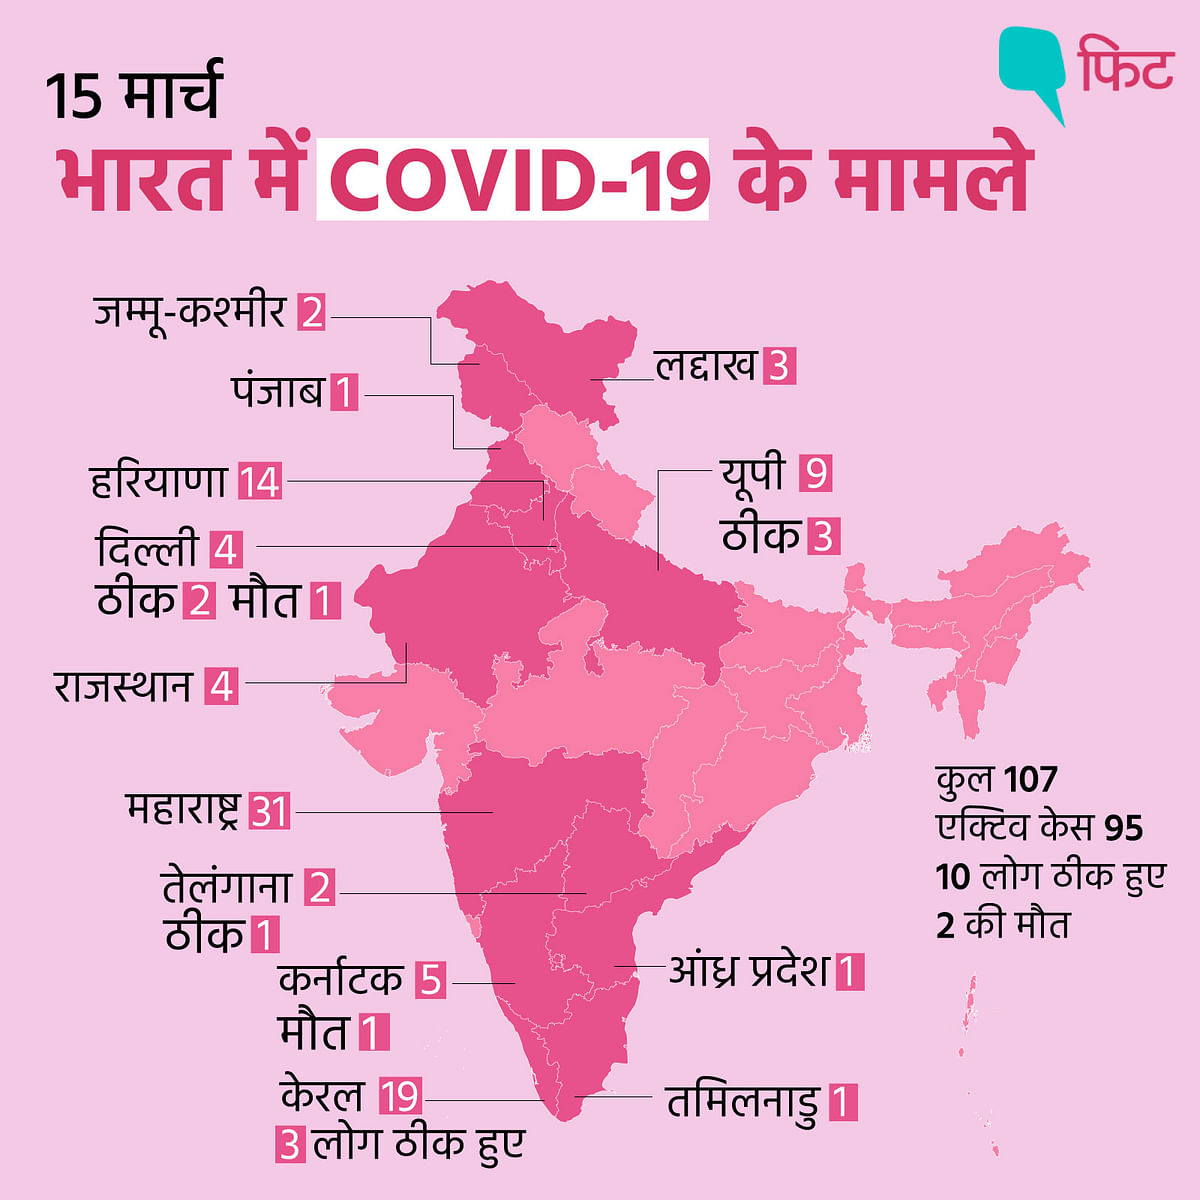 राजधानी दिल्ली में कोरोनावायरस के कुल 7 मामले सामने आए हैं. 